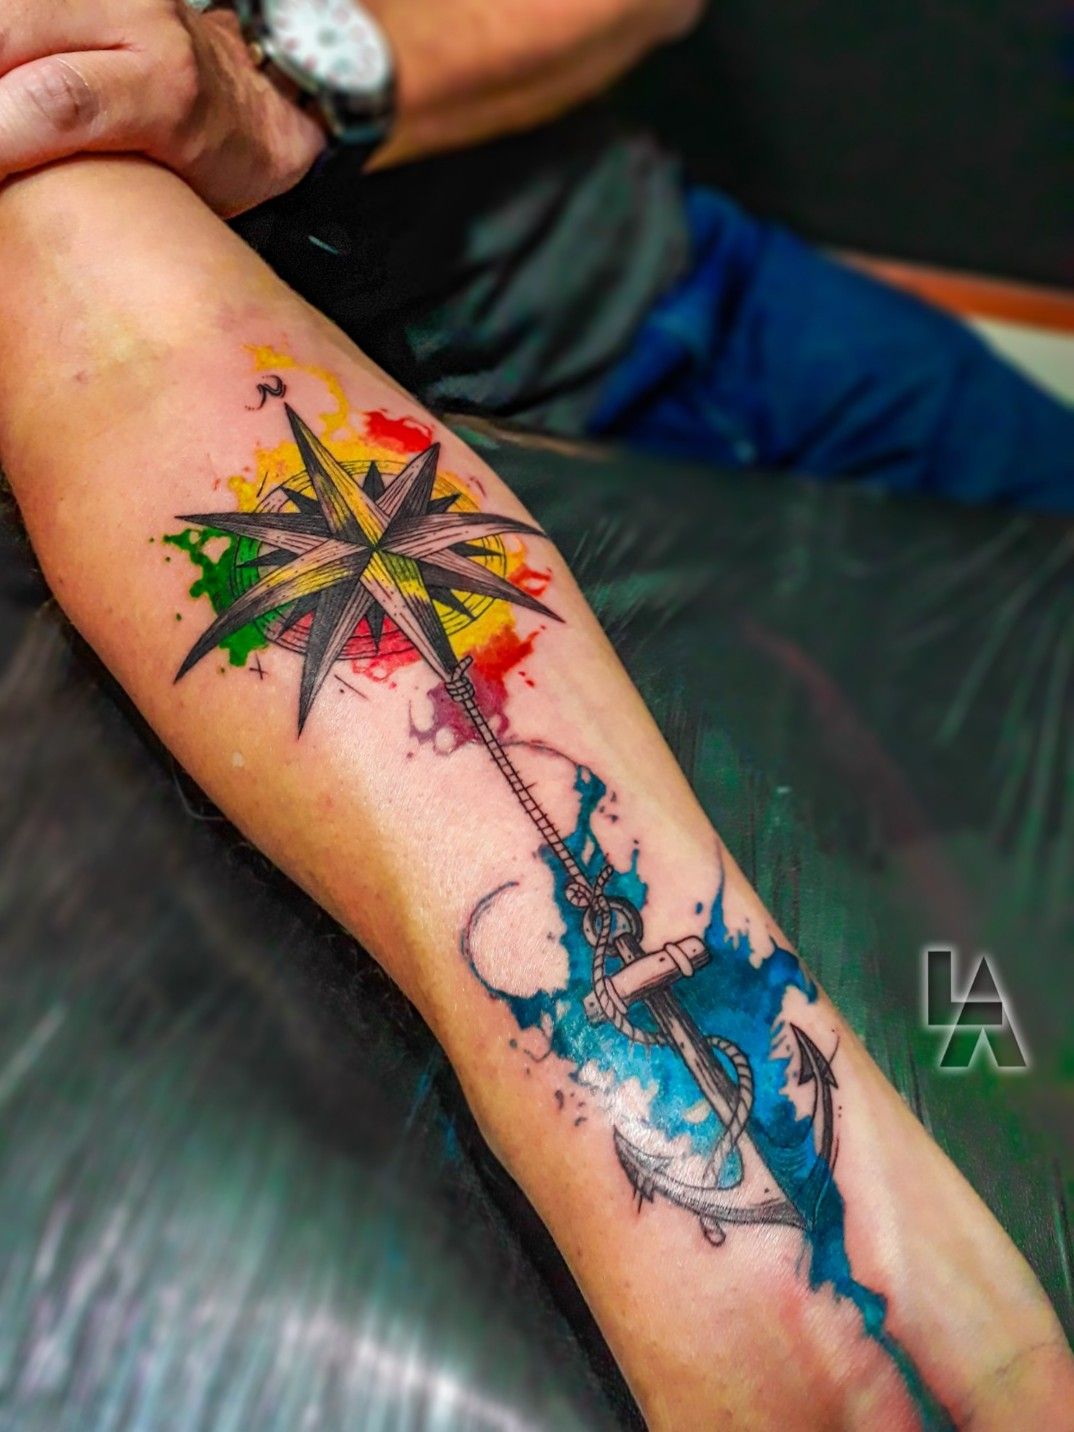 Christopher Scott Tattoos  Albuquerque NM  Tattoos New mexico tattoo  Mexico tattoo